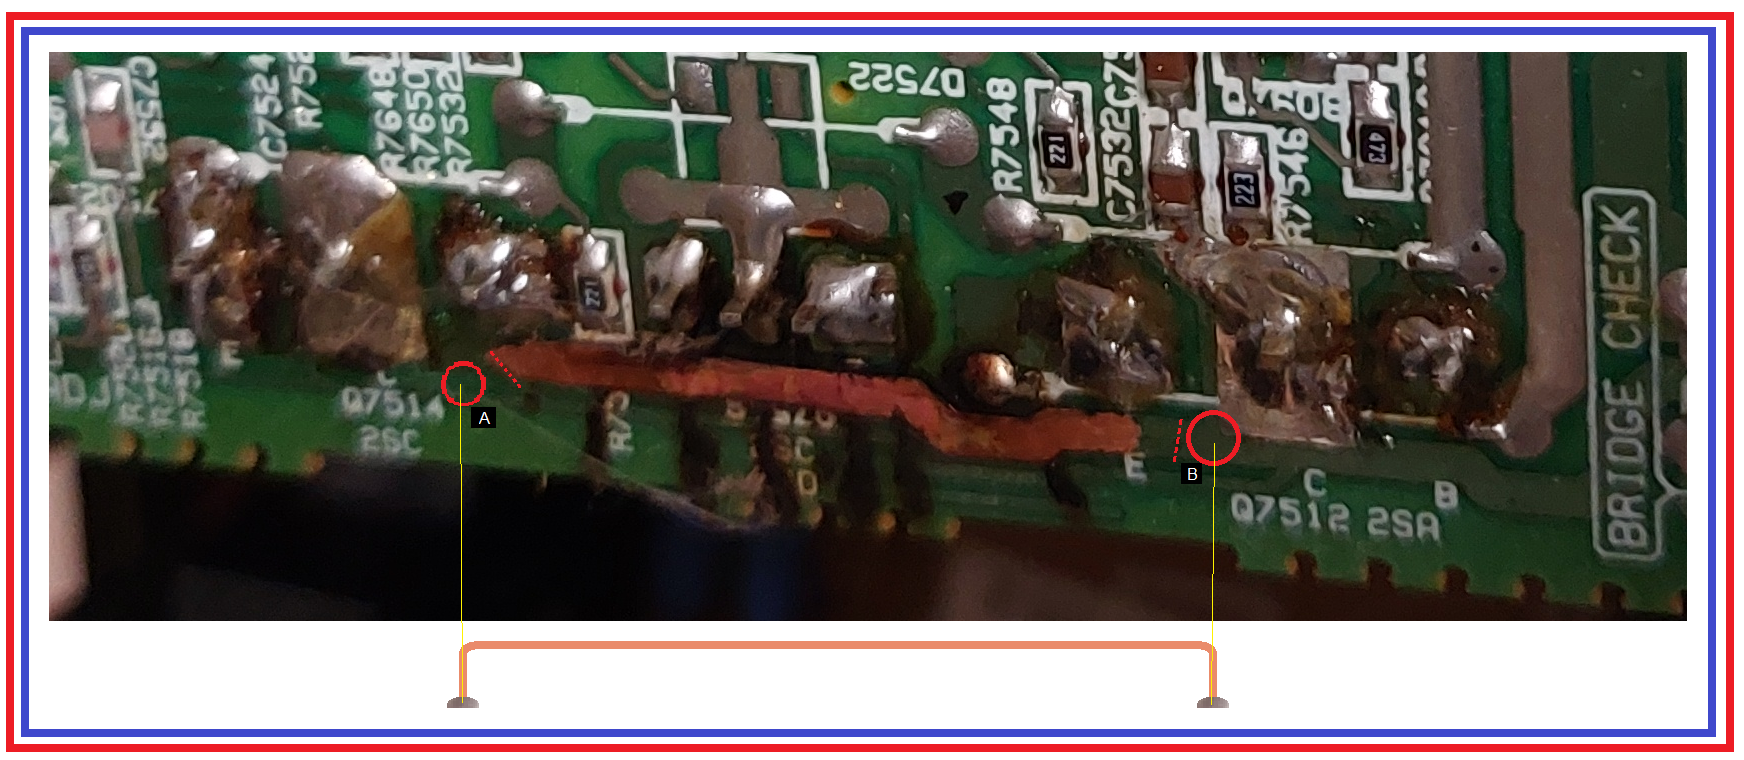 Circuit-board-repair-link.png